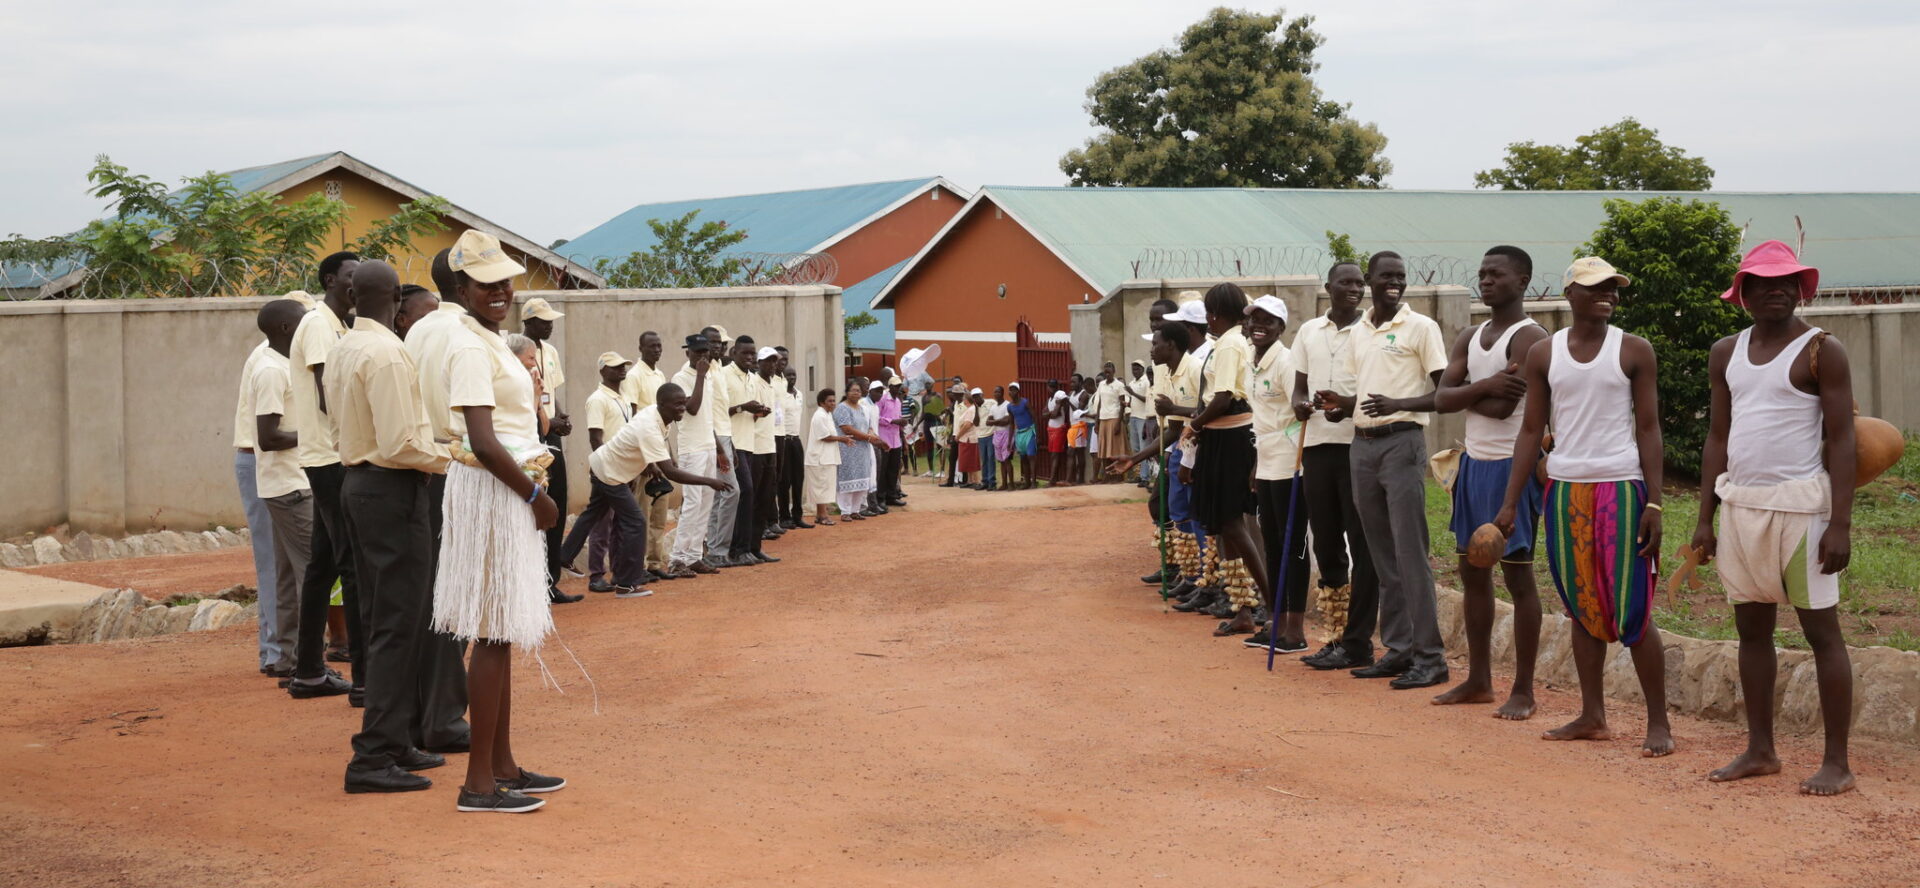 Au Soudan du Sud, le pape viendra en particulier soutenir les catholiques, qui représentent un tiers de la population | photo: l'institution catholique Solidarity School de Yambio, au sud du pays | © UNMISS/Flickr/CC BY-NC-ND